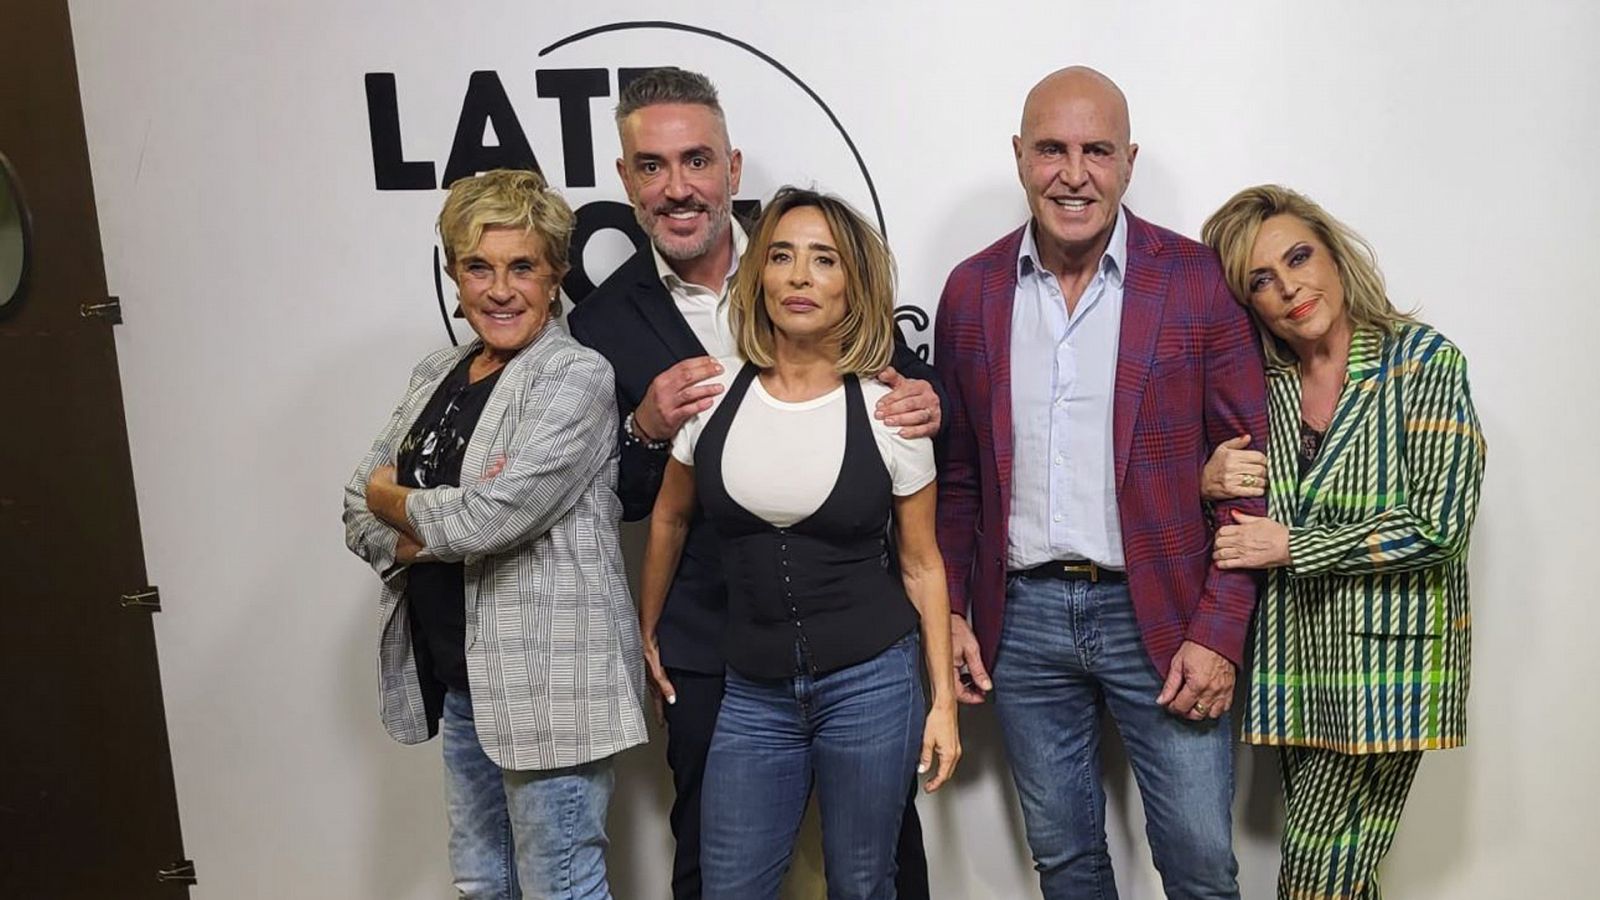 Late Xou con Marc Giró - Programa 7: Los protagonistas de 'Sálvese quien pueda' y Alfonso Bassave